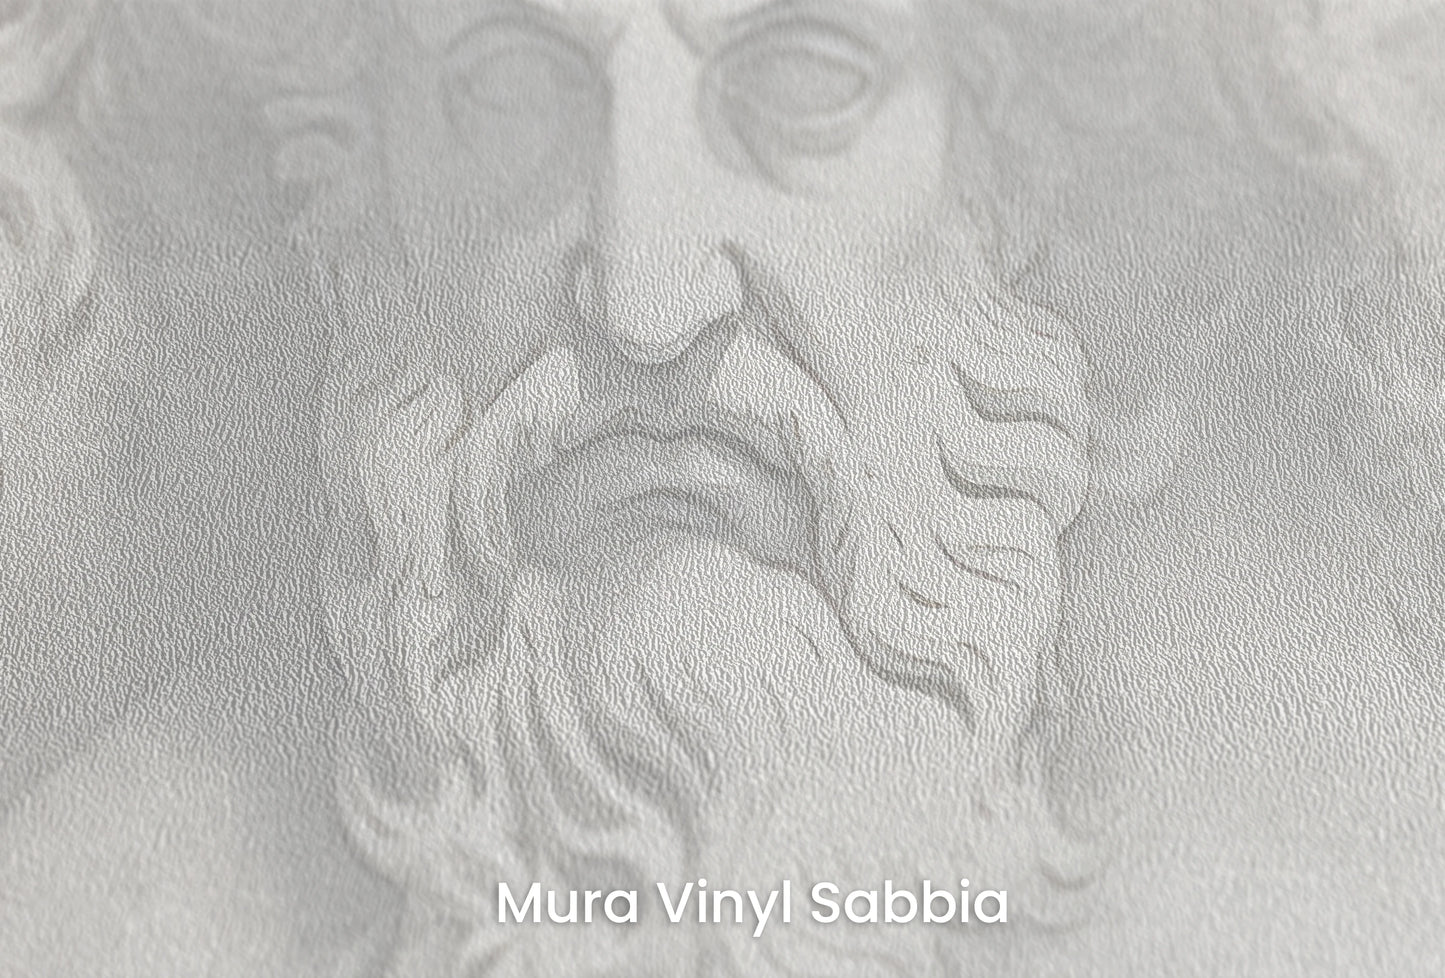 Zbliżenie na artystyczną fototapetę o nazwie Philosophers' Musings na podłożu Mura Vinyl Sabbia struktura grubego ziarna piasku.